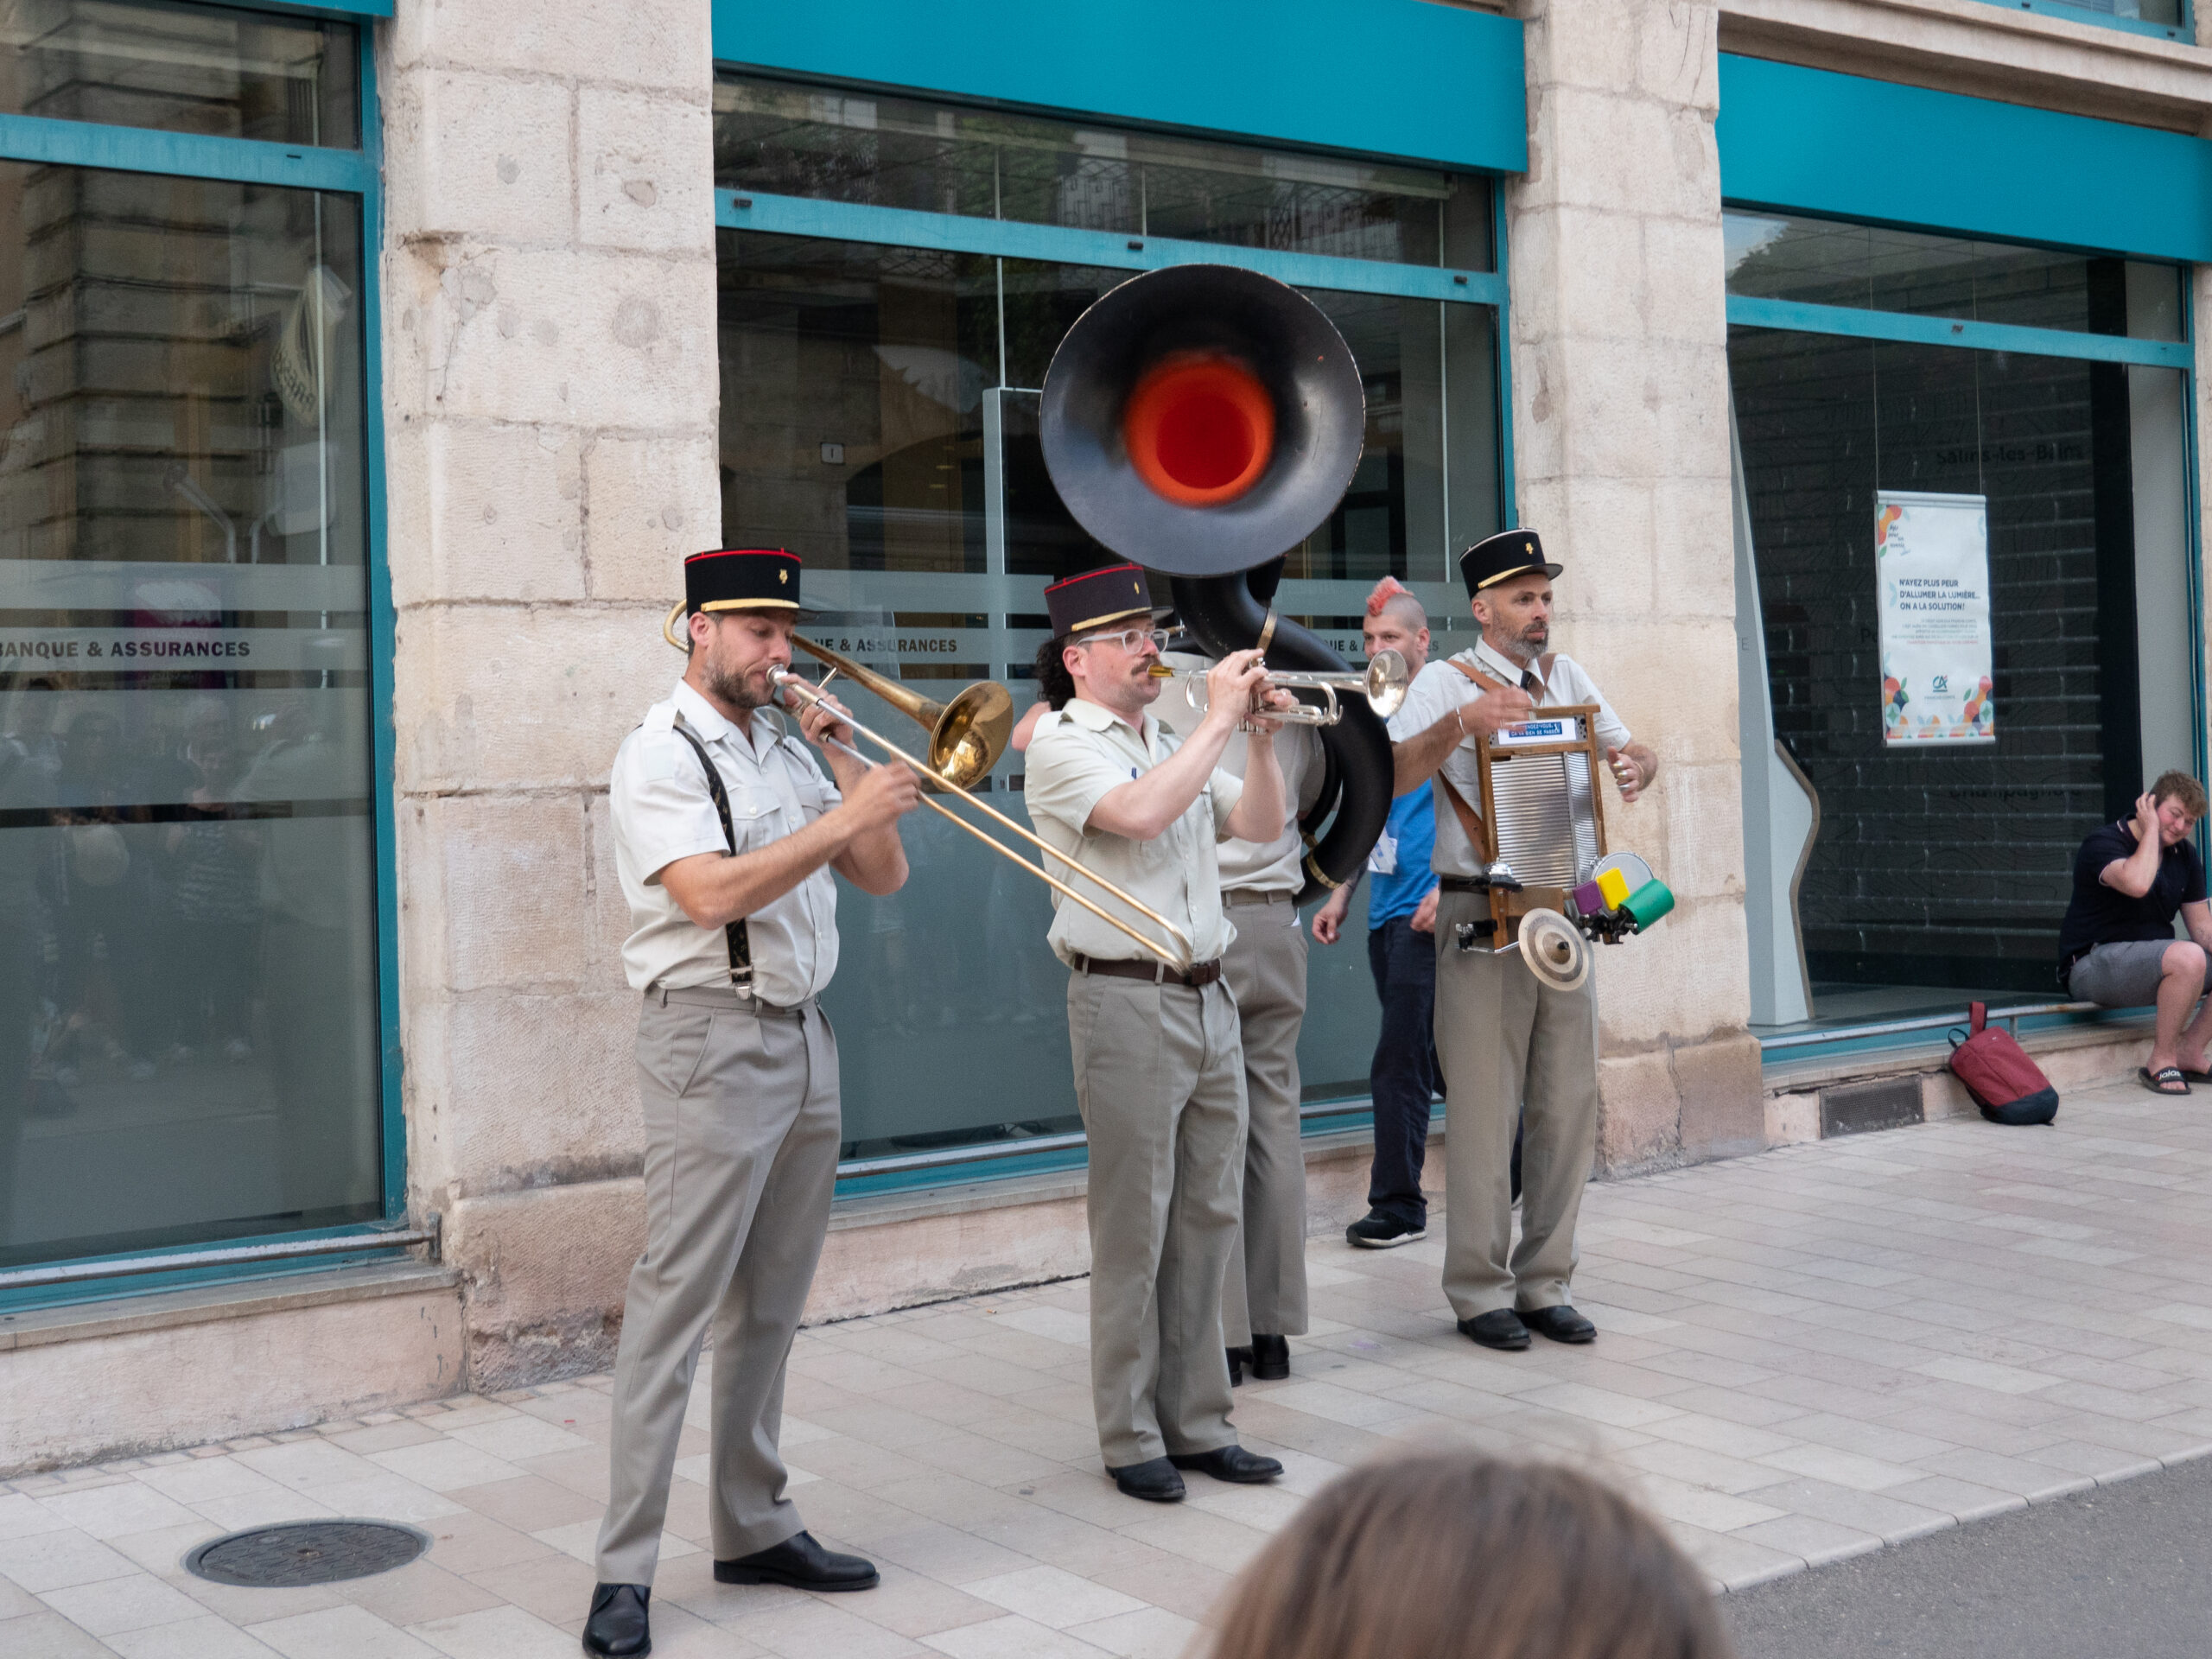 quatuor de musiciens habillés en flics, costumes gris et képis, avec un tuba, une trompette, un trombone et un bruiteur / percussionniste, ils sont sur le trottoir